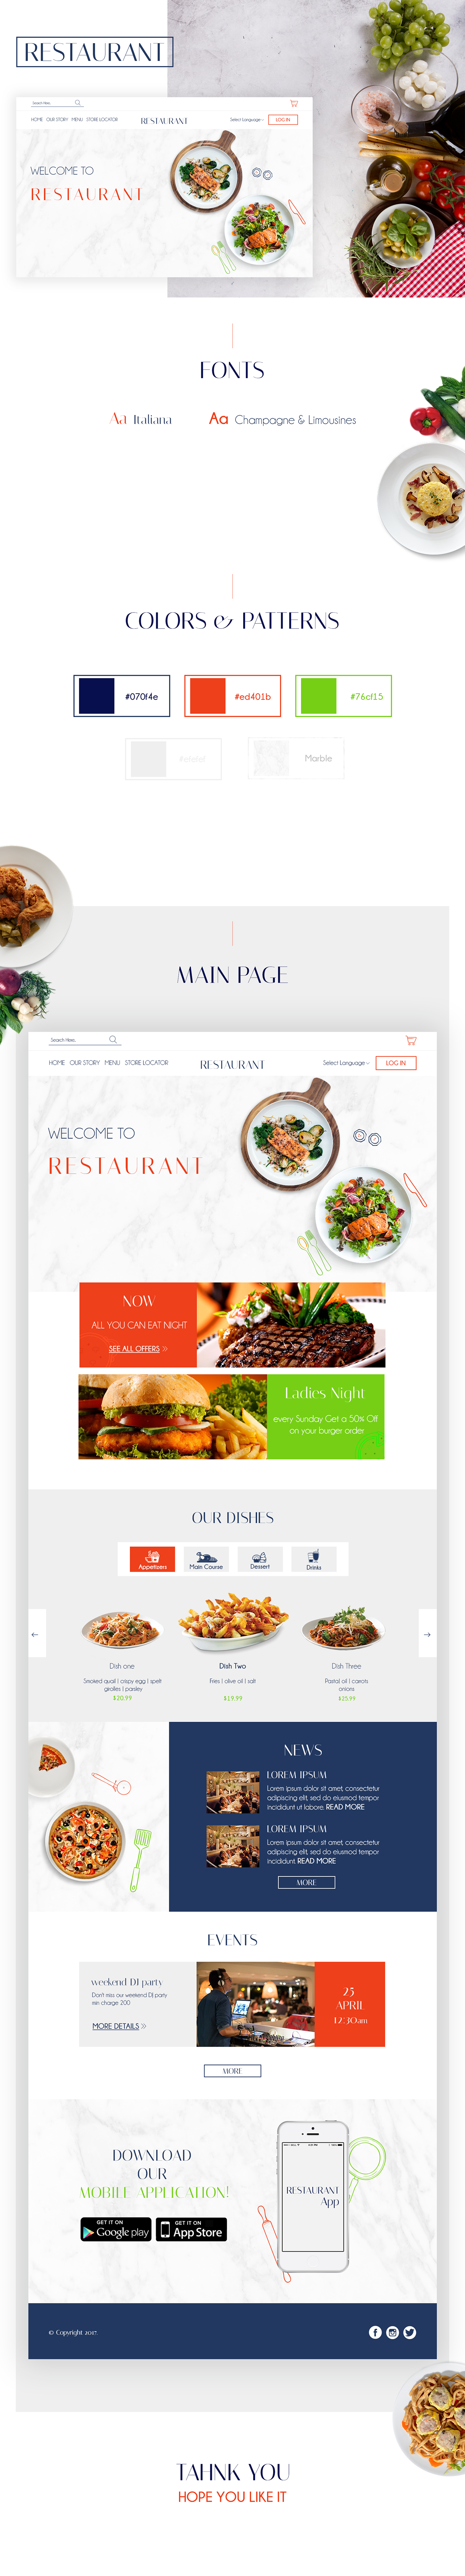 UI restaurant Web Design 